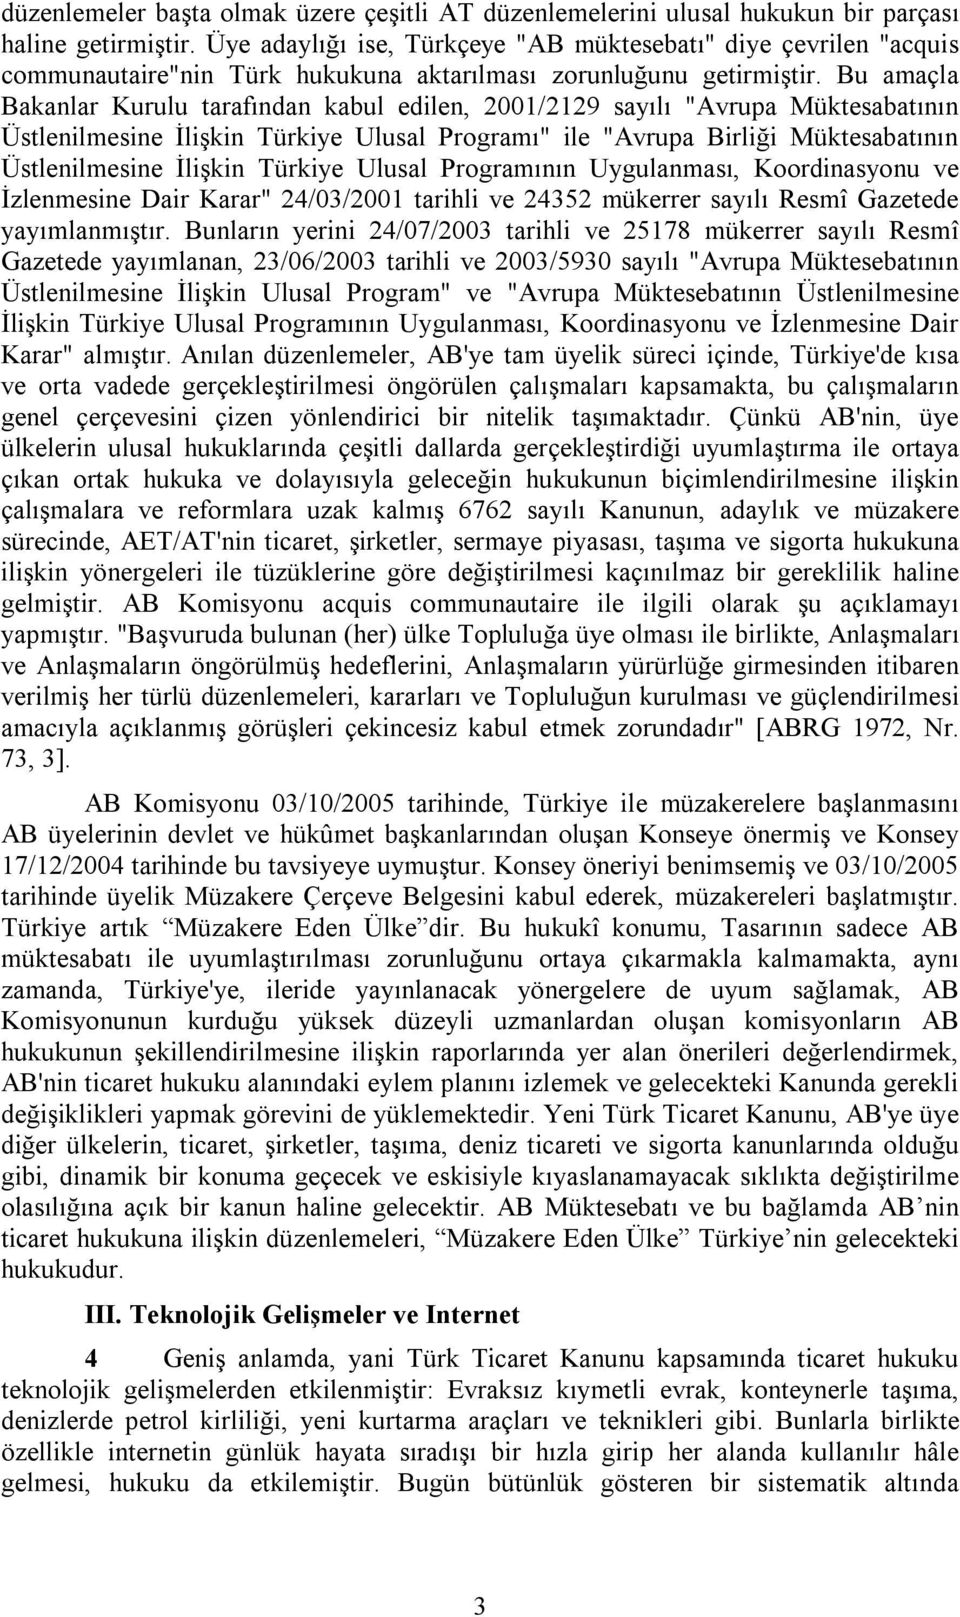 Bu amaçla Bakanlar Kurulu tarafından kabul edilen, 2001/2129 sayılı "Avrupa Müktesabatının Üstlenilmesine İlişkin Türkiye Ulusal Programı" ile "Avrupa Birliği Müktesabatının Üstlenilmesine İlişkin